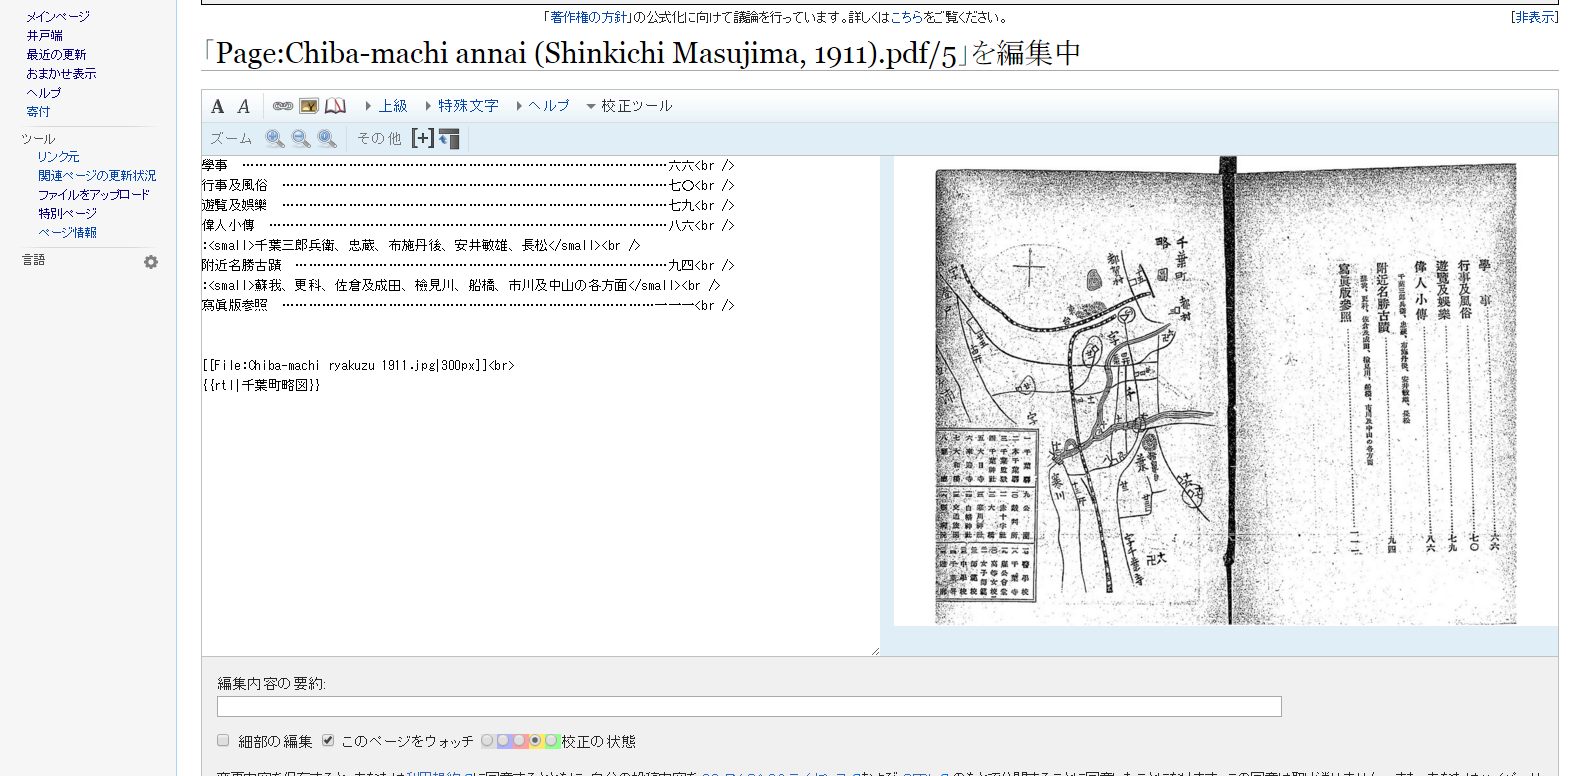 「Page Chiba machi annai  Shinkichi Masujima  1911 .pdf 5」を編集中   Wikisource.png